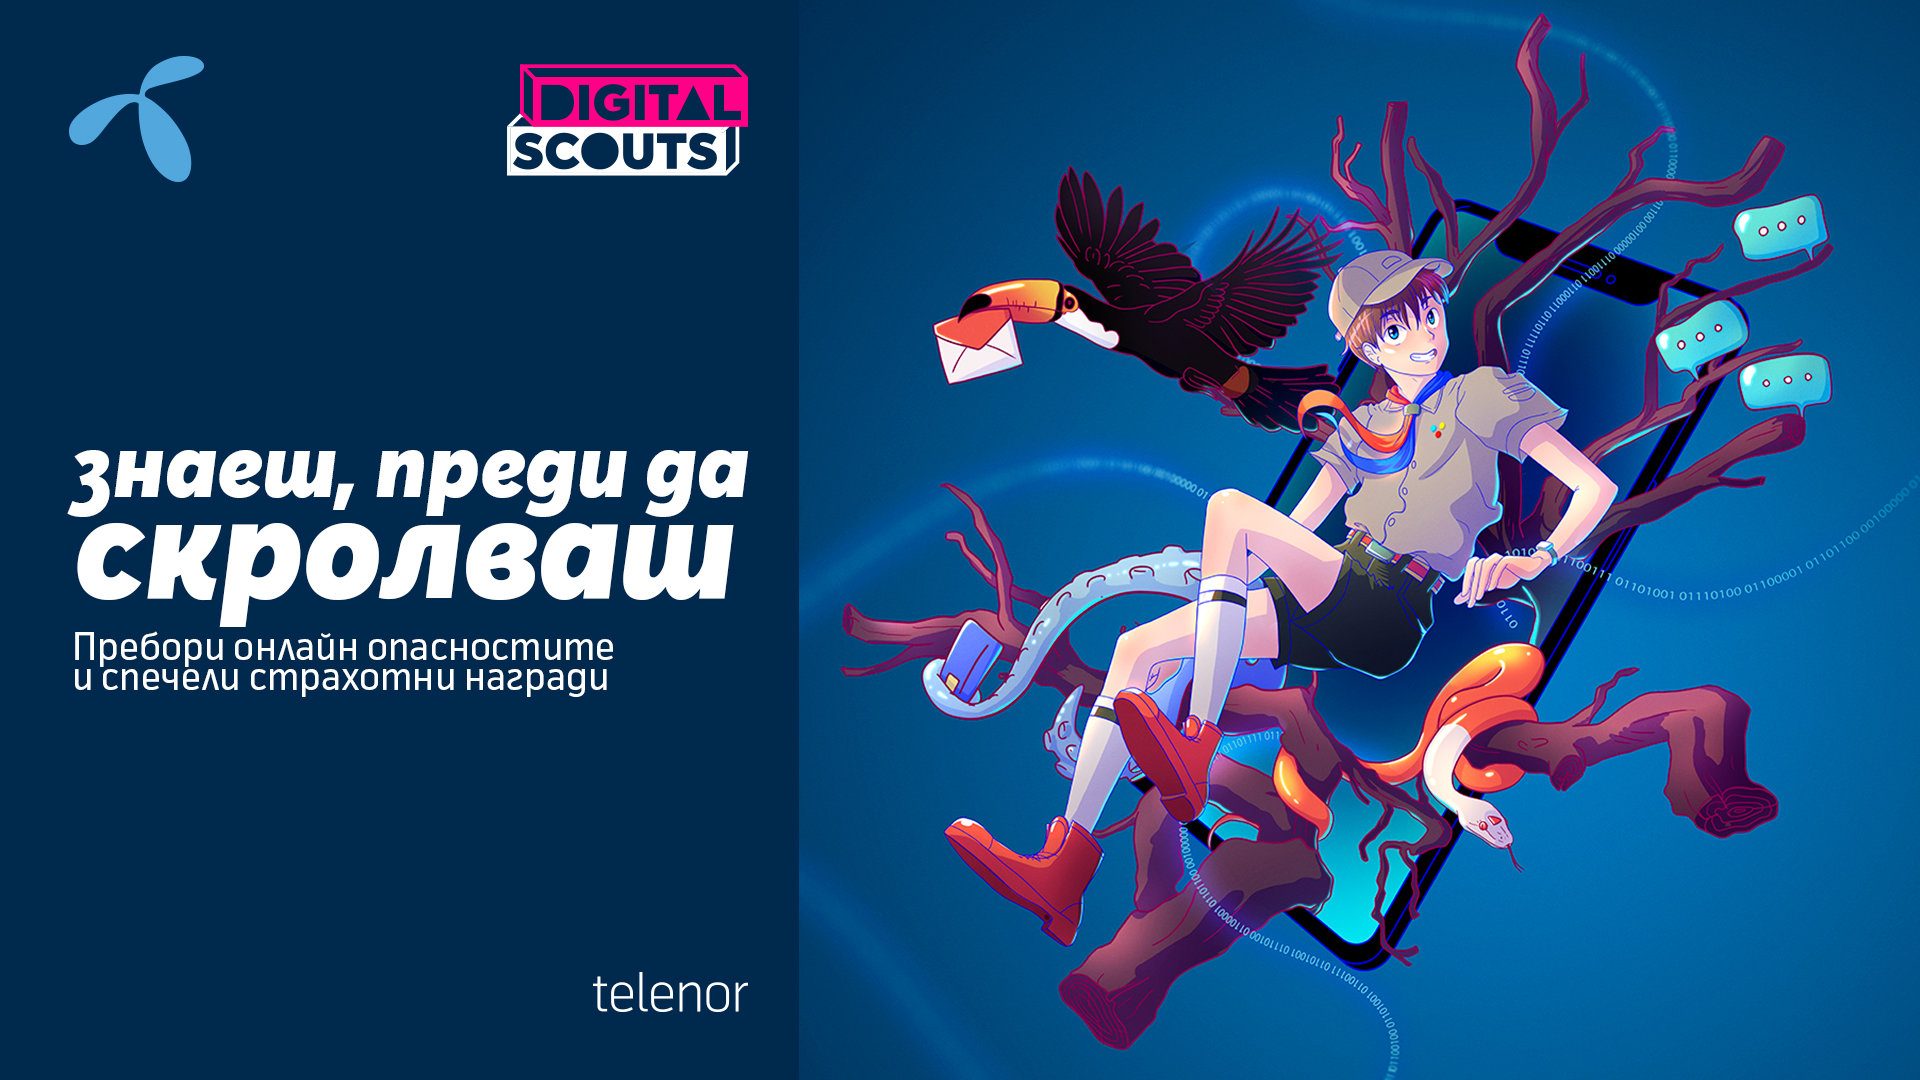 Теленор България отново ще обучава деца и младежи на дигитална